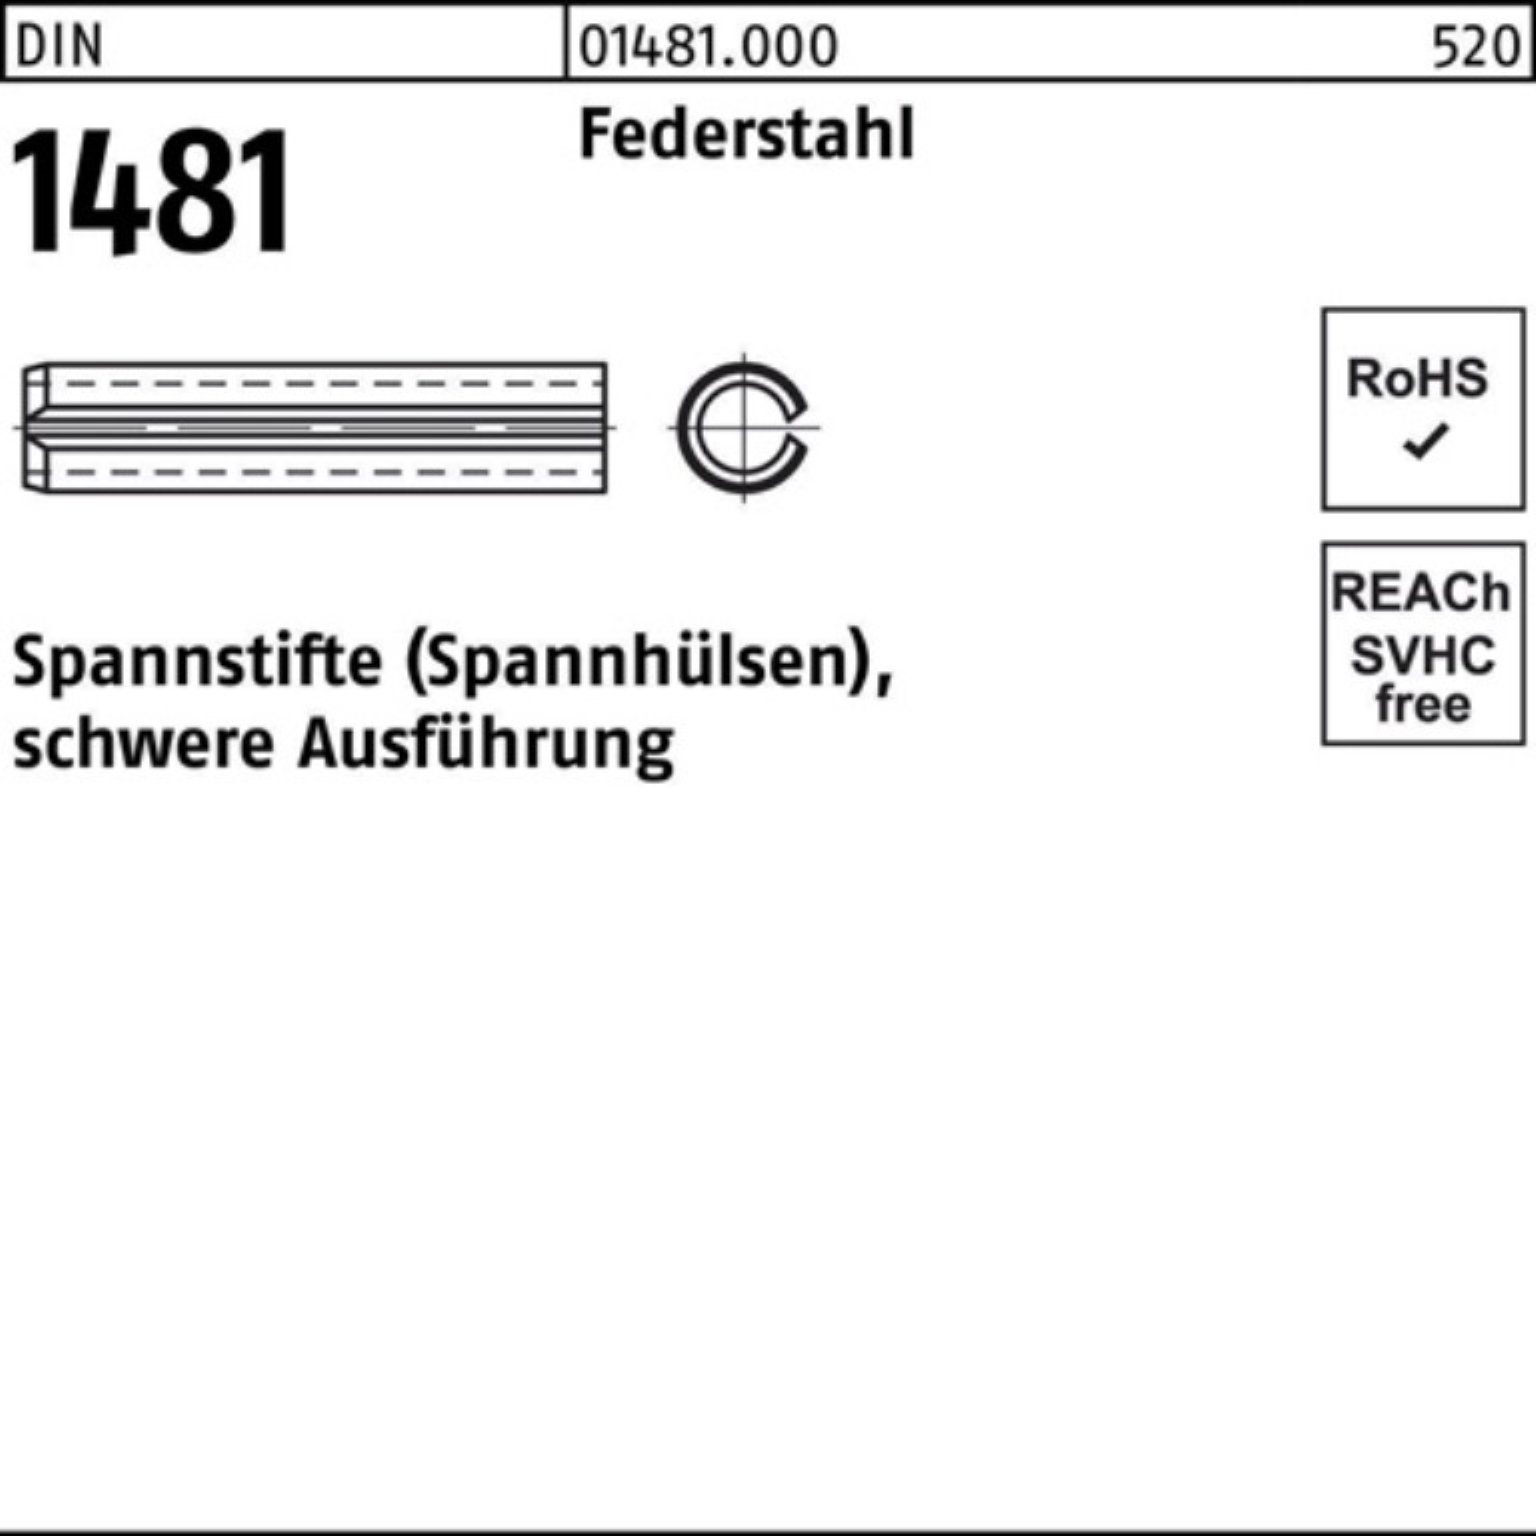 Reyher Spannstift 100er Pack Spannstift DIN 1481 10x 120 Federstahl schwere Ausführung